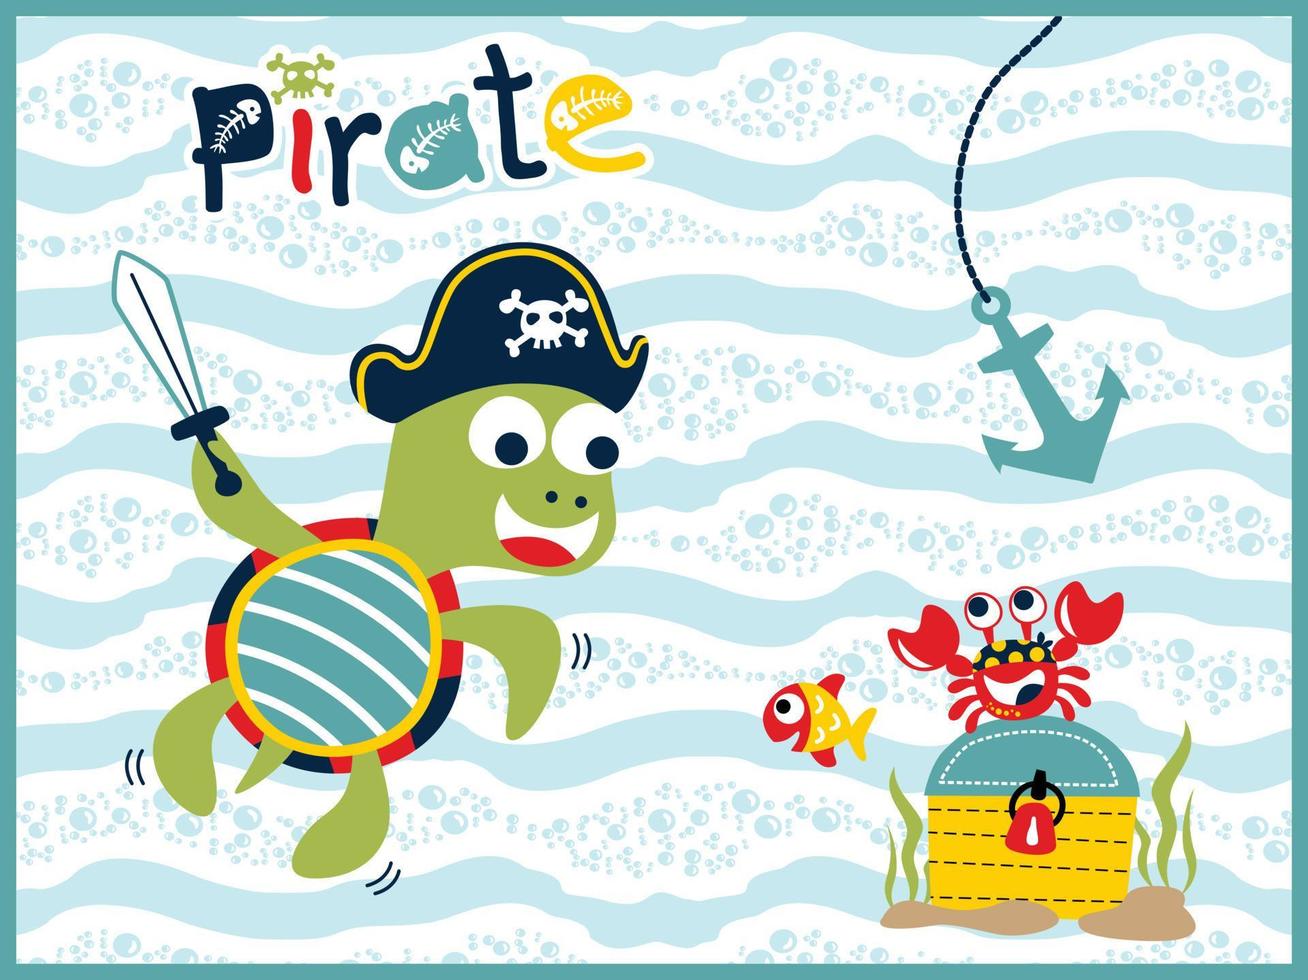 dessin vectoriel d'animaux marins en costume de pirate avec coffre au trésor, illustration d'élément sous-marin